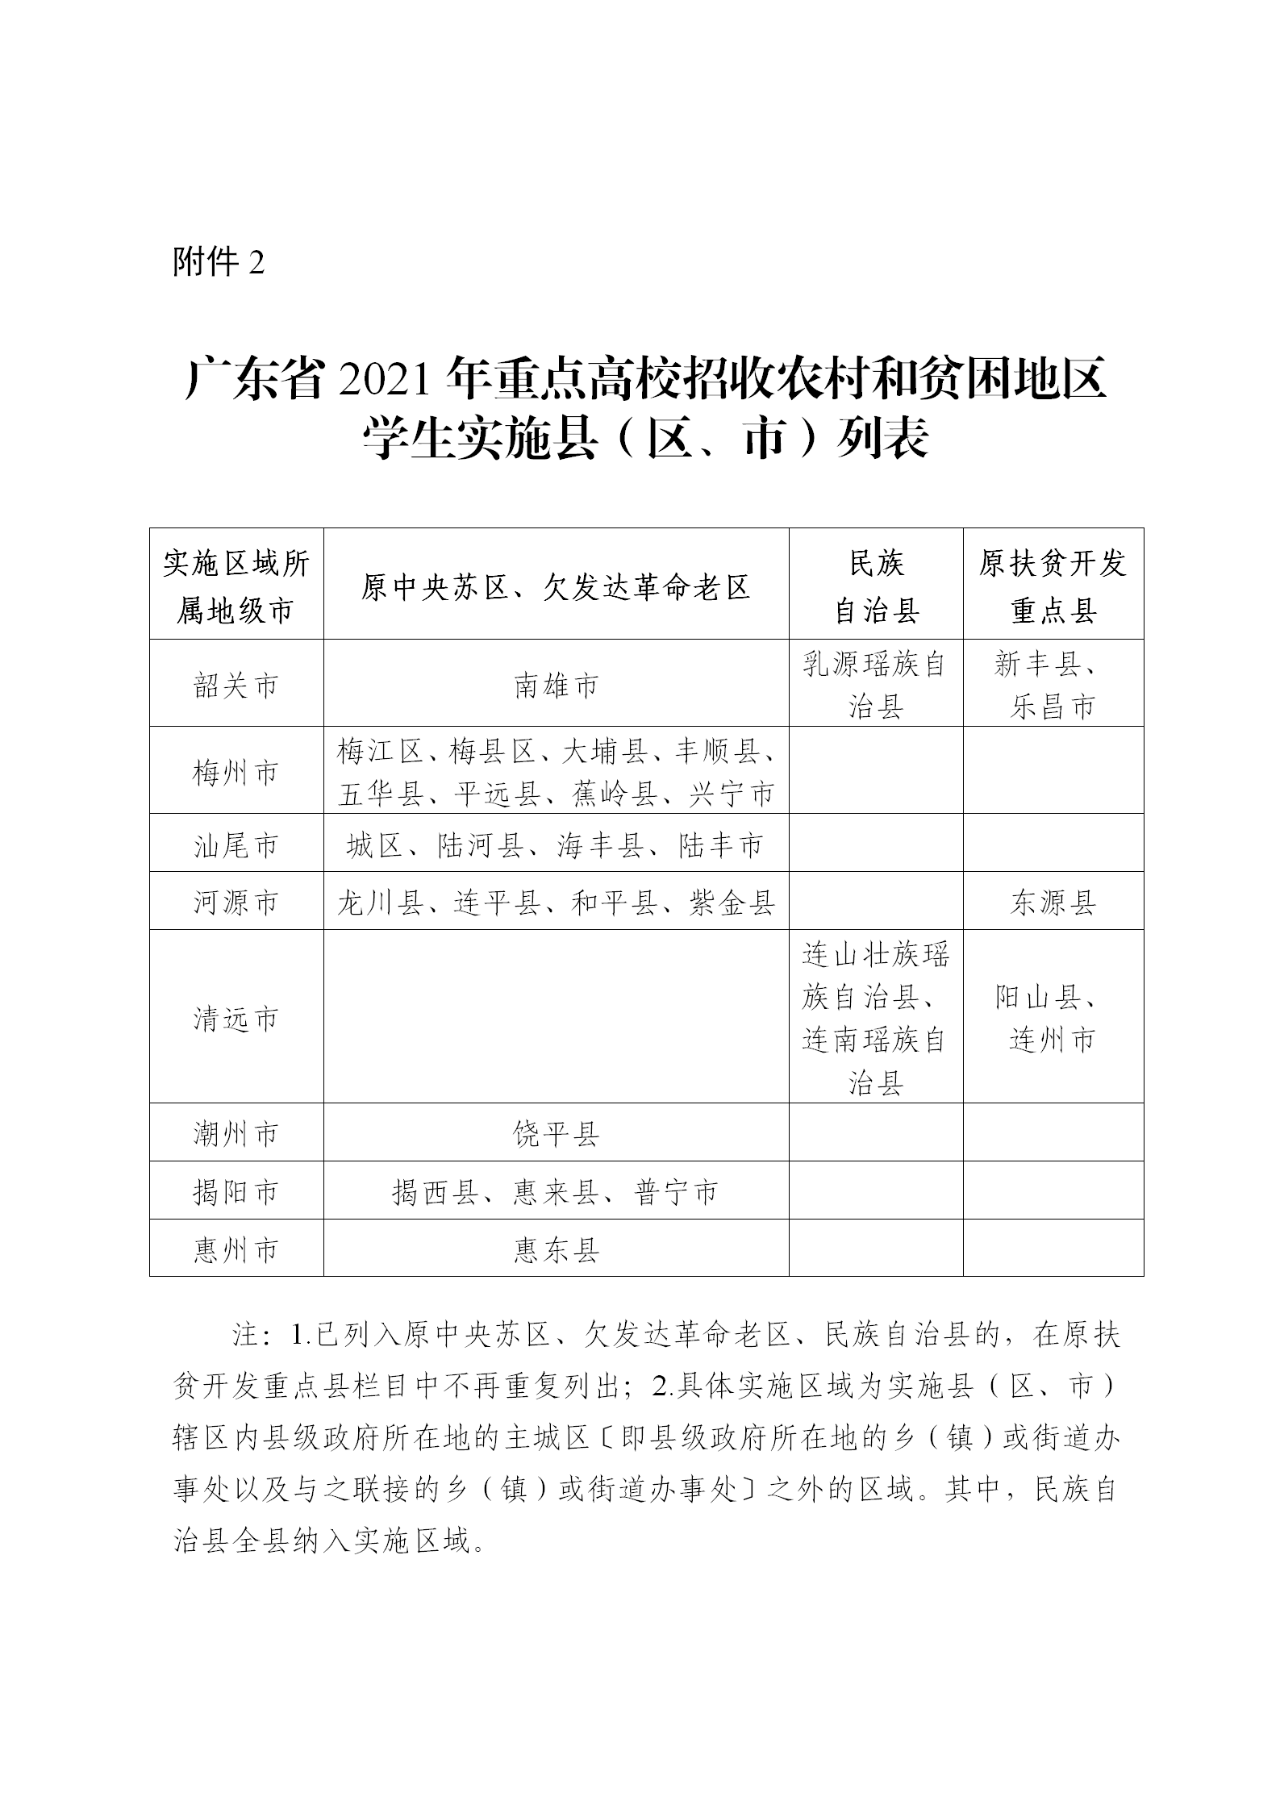 2021年广东省重点高校招收农村和贫困地区学生工作通知